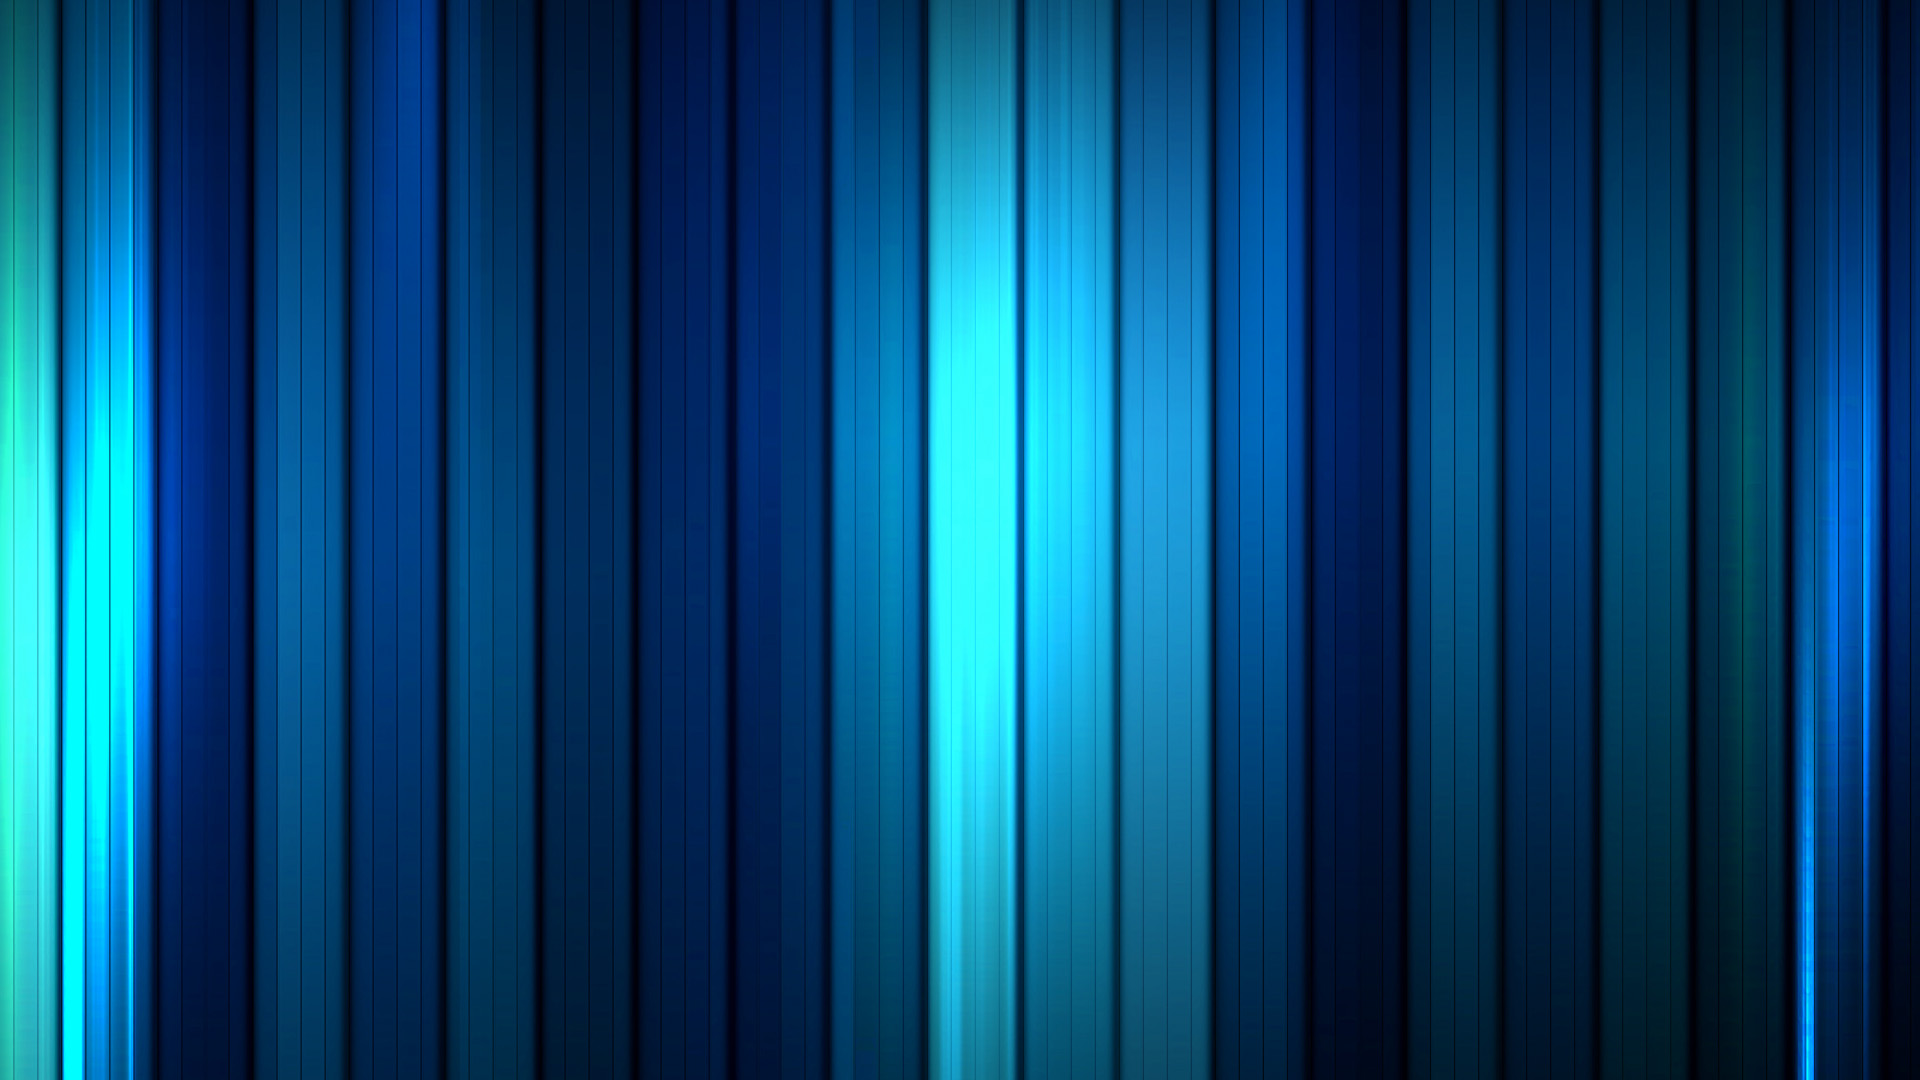 immagini di sfondo hd,blu,blu cobalto,turchese,verde,blu elettrico